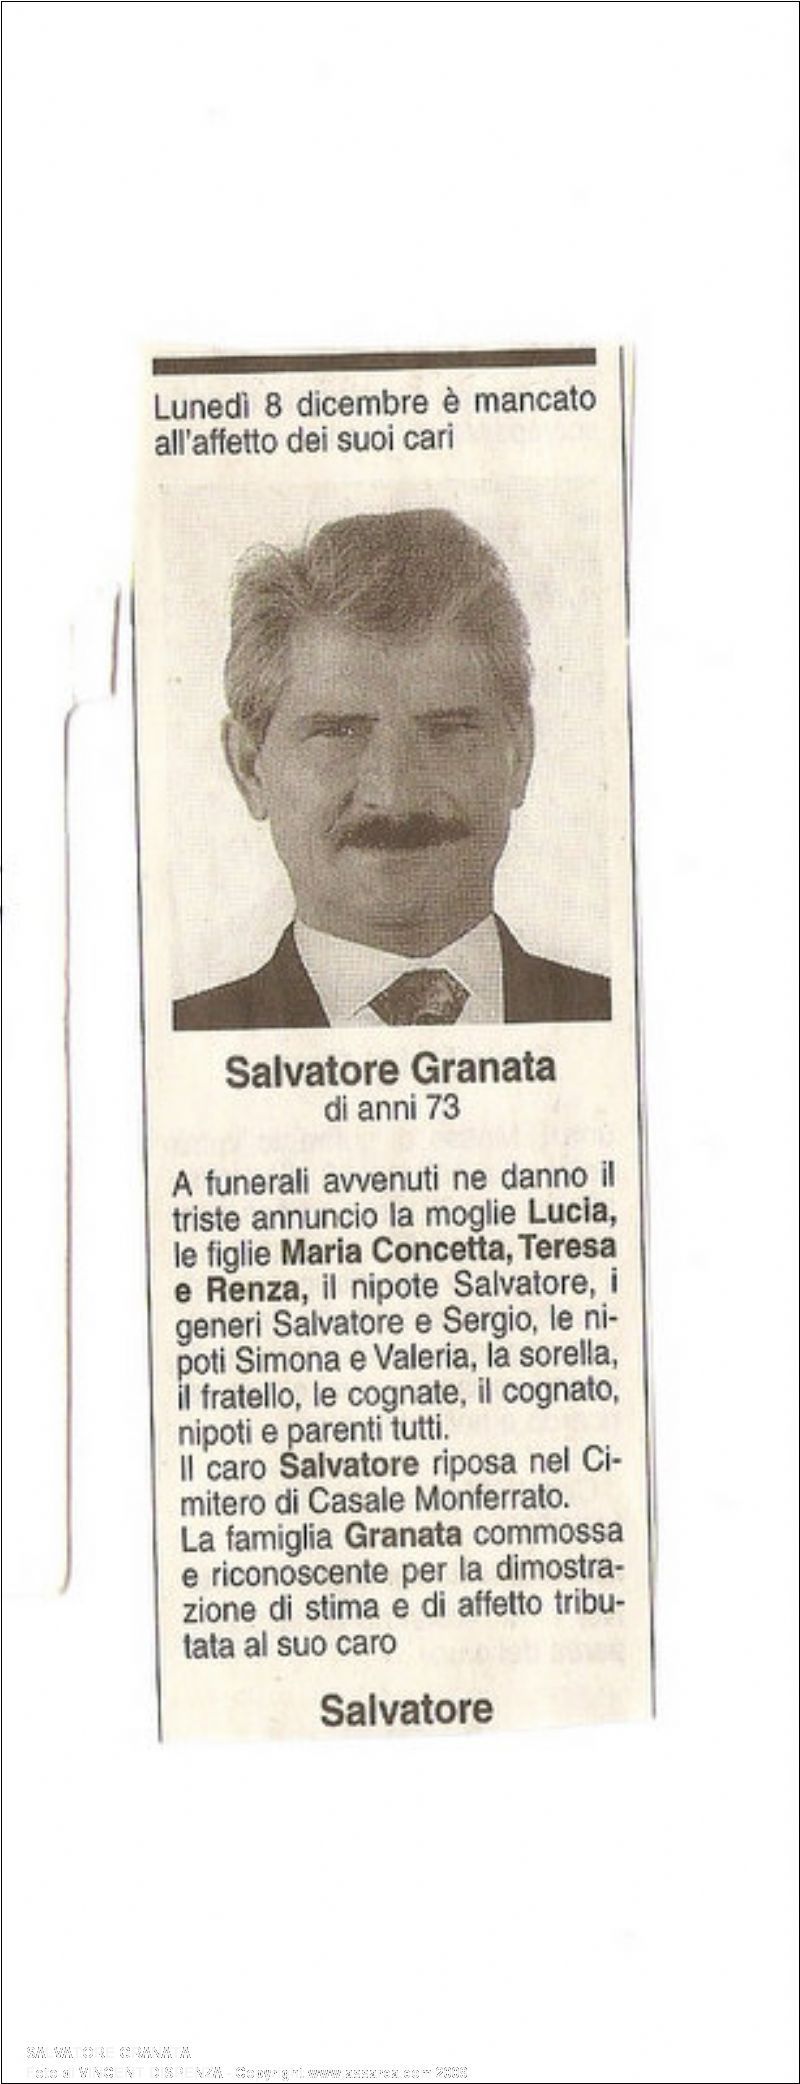 Salvatore Granata